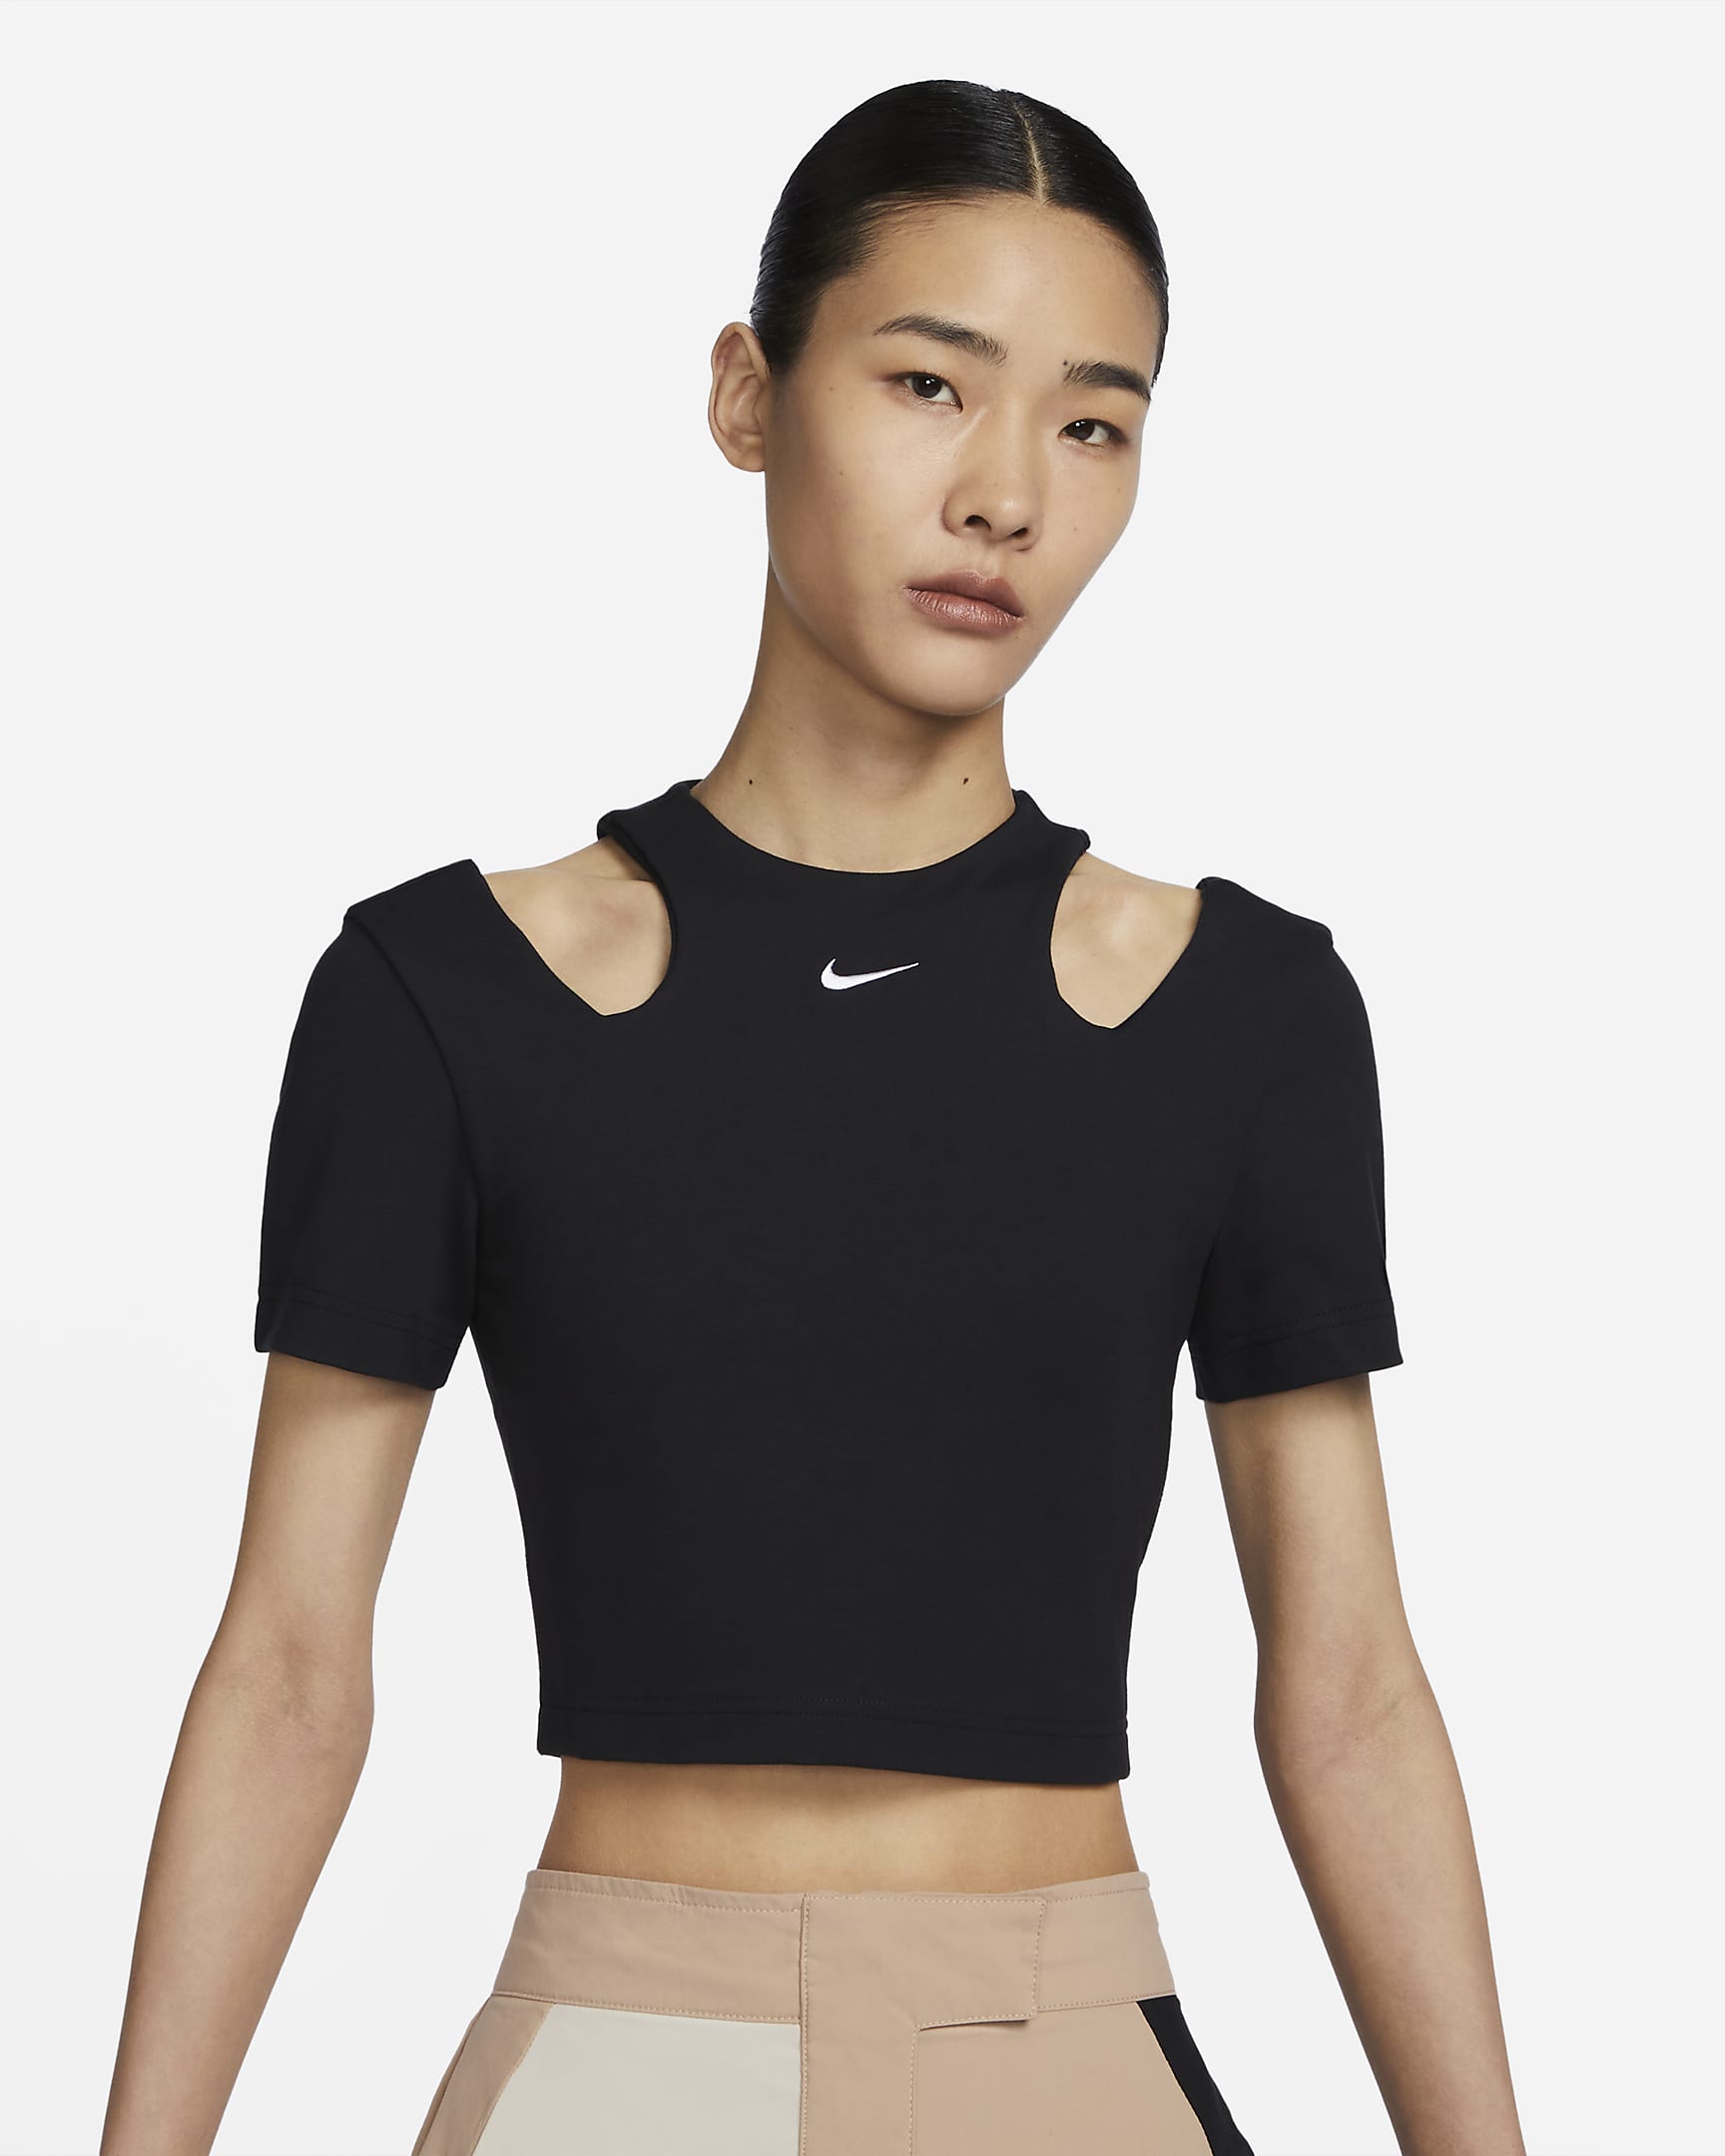 Nike Sportswear Essentials Women's Short-Sleeve Top. Nike VN